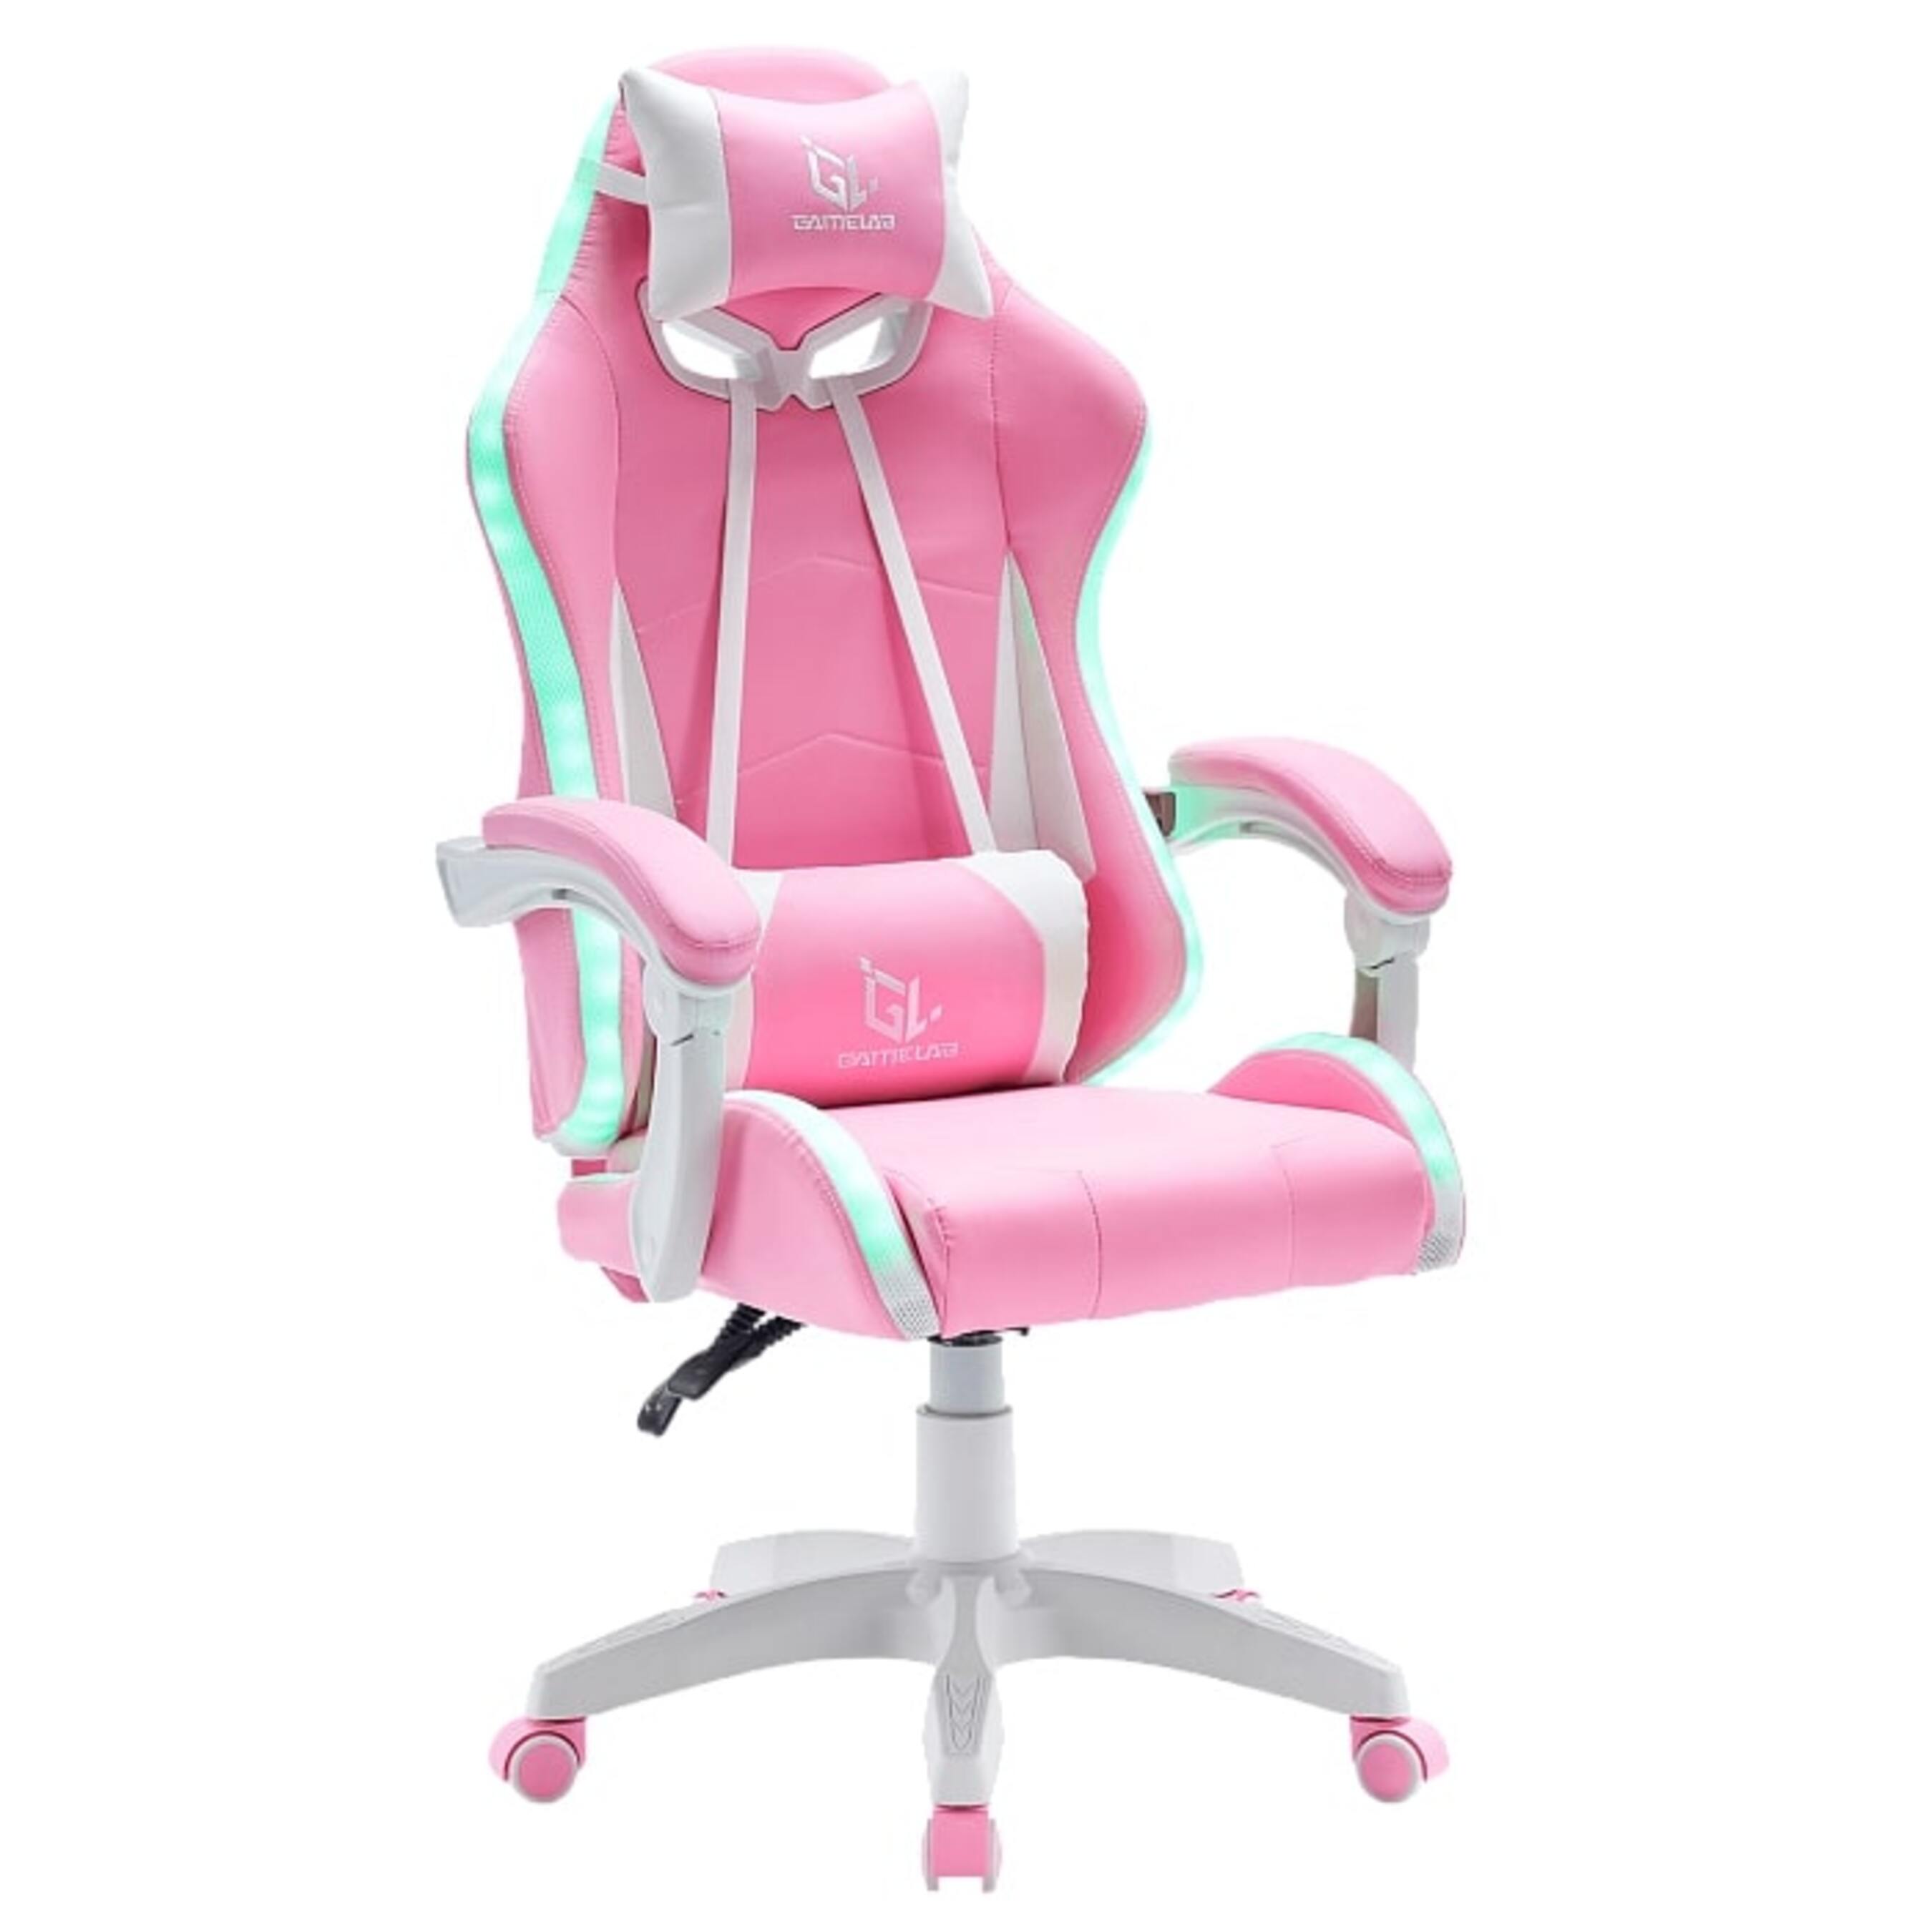 Игровые кресла GameLab TETRA RGB Pink игровые кресла gamelab tetra rgb pink